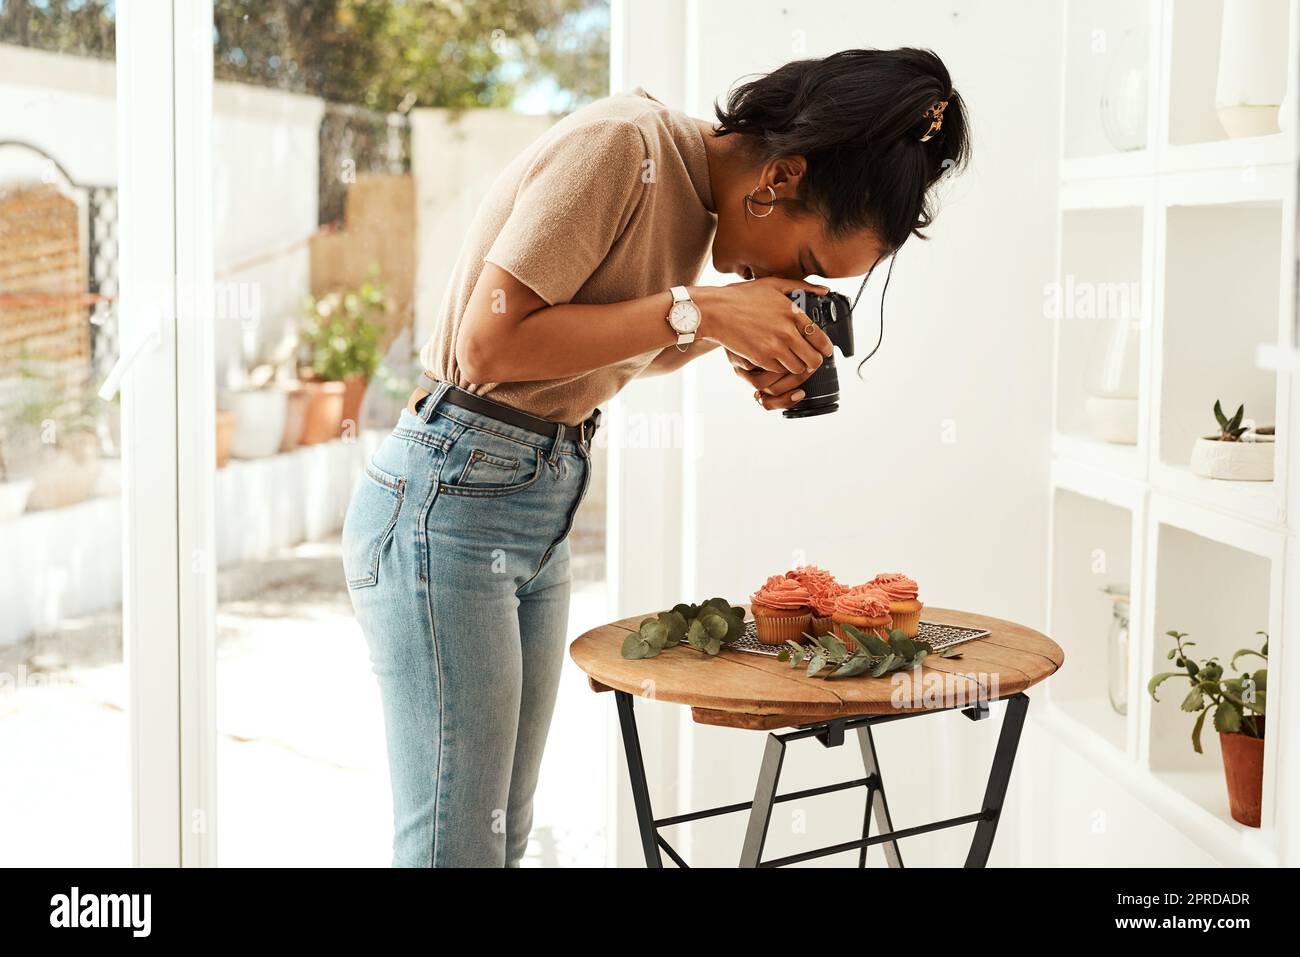 Das Zuckerguss sieht durch das Objektiv erstaunlich aus. Eine attraktive junge Geschäftsfrau steht und fotografiert mit ihrer Kamera Cupcakes für ihren Blog. Stockfoto